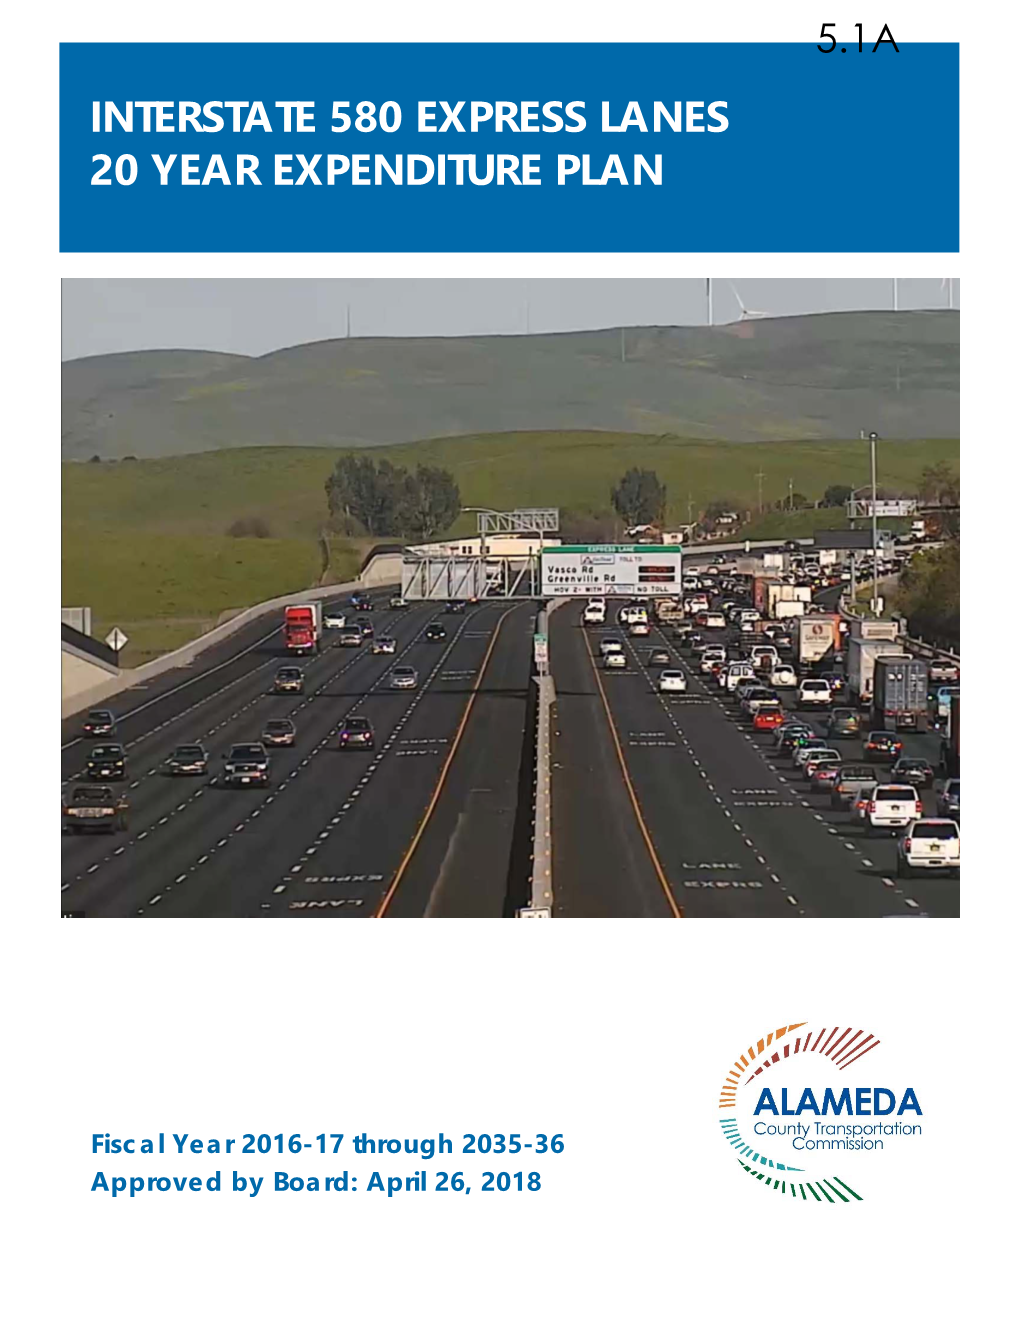 Interstate 580 Express Lanes 20 Year Expenditure Plan